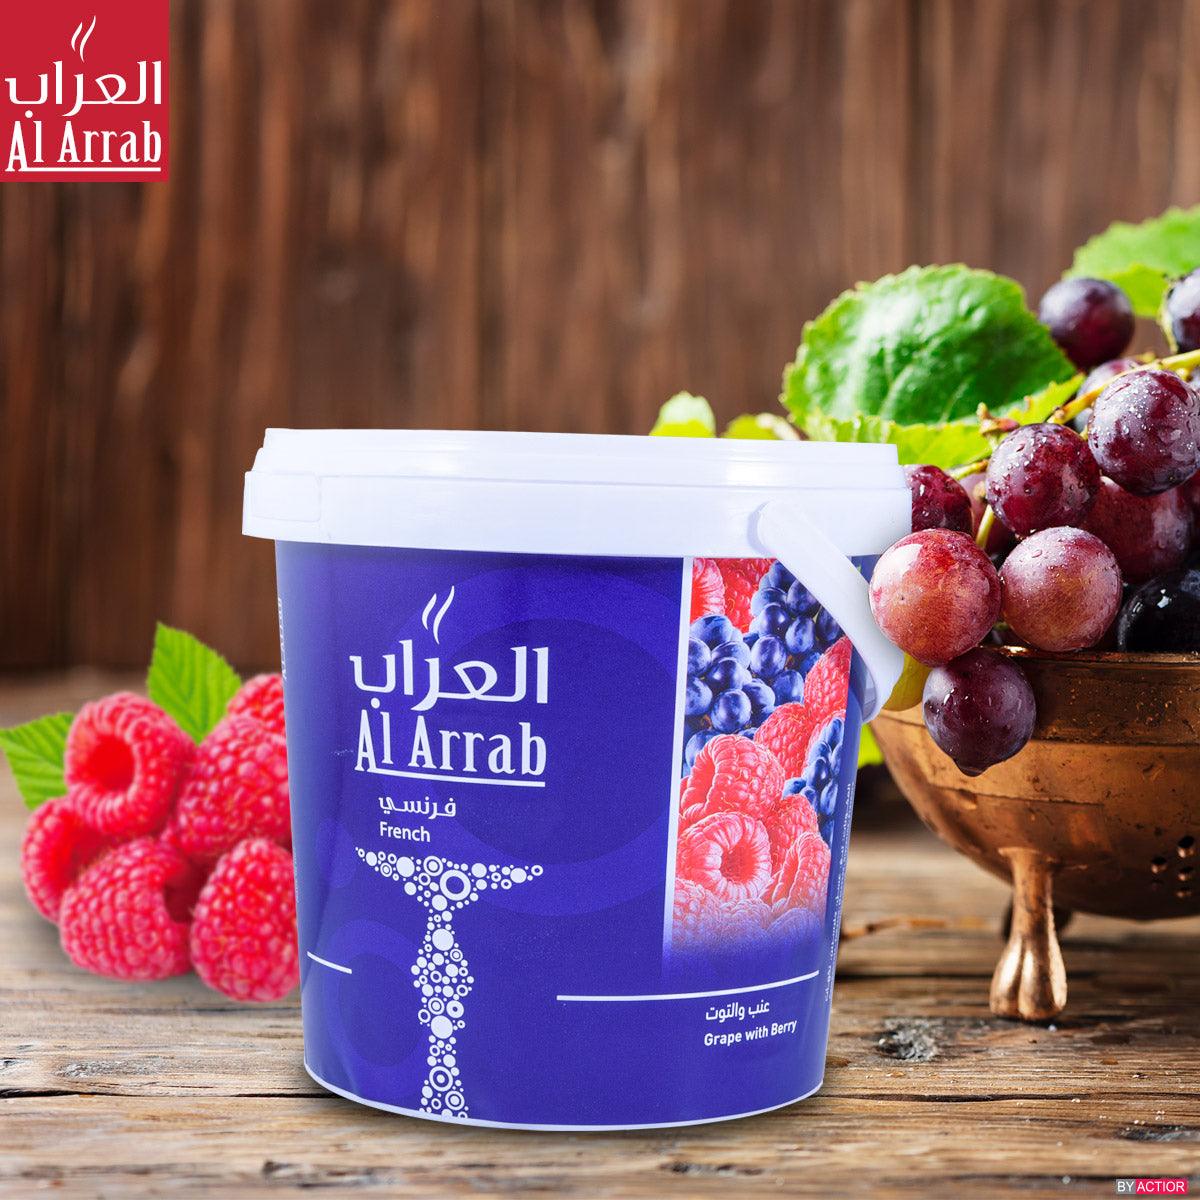 Al Arrab Molasses Grape and Berry  - معسّل العراب عنب و توت - Shishabox